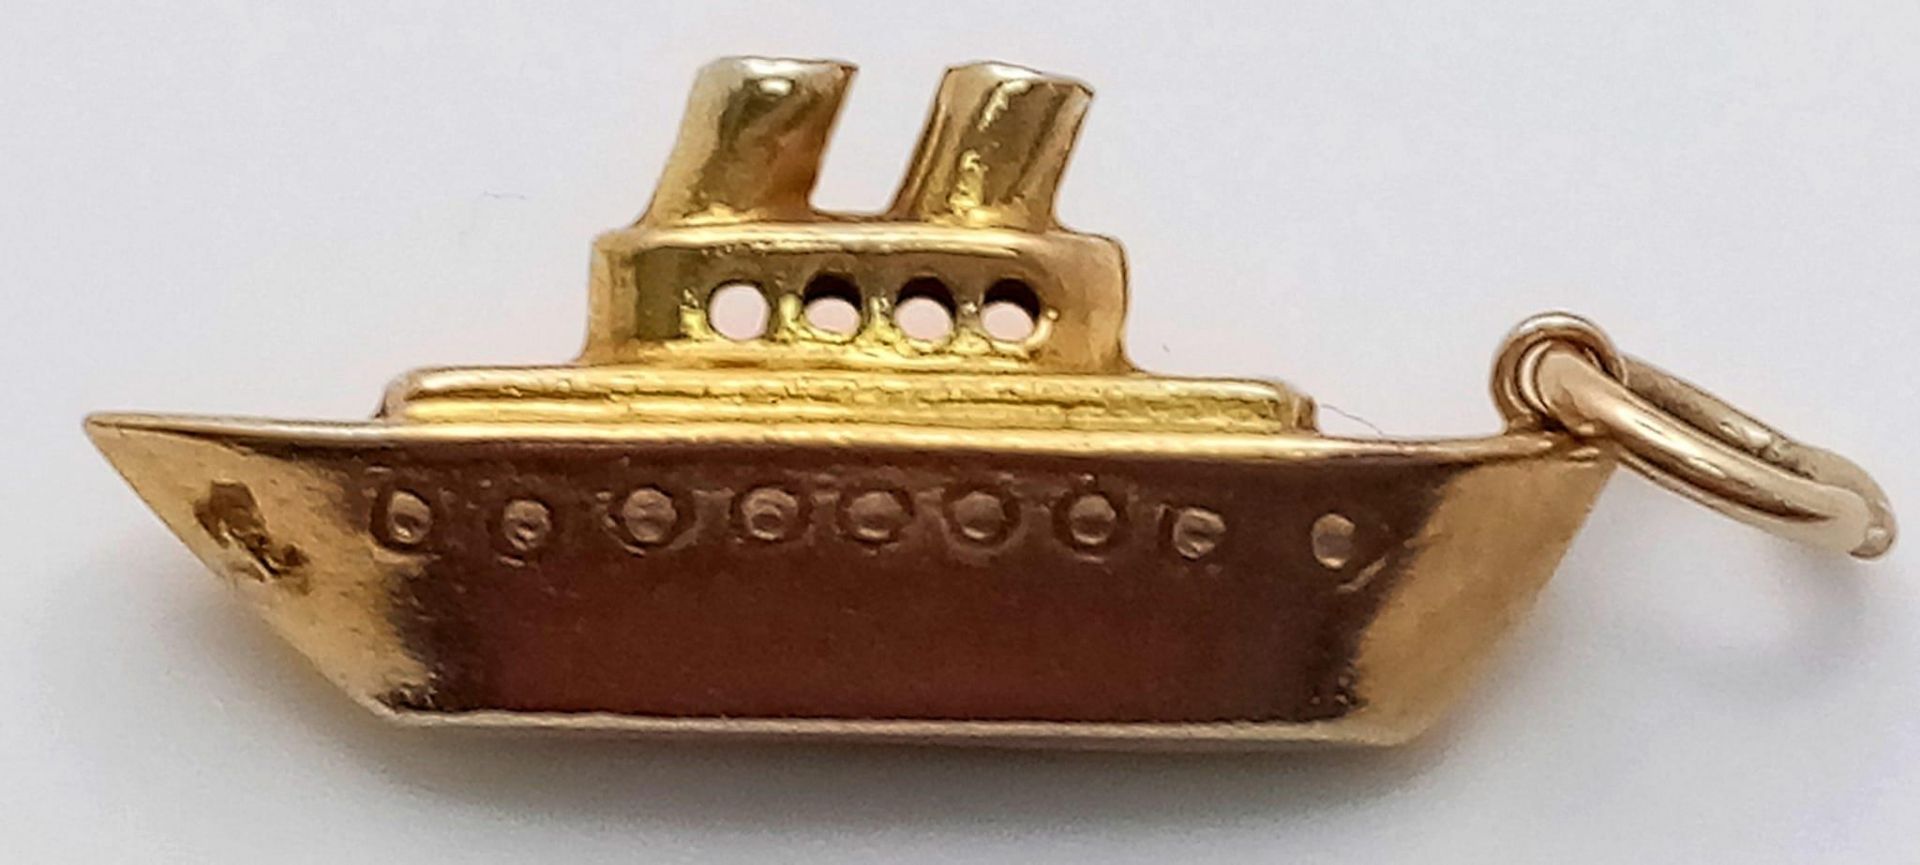 A 9K Yellow Gold Battleship Charm/Pendant. 3cm. 1g weight.